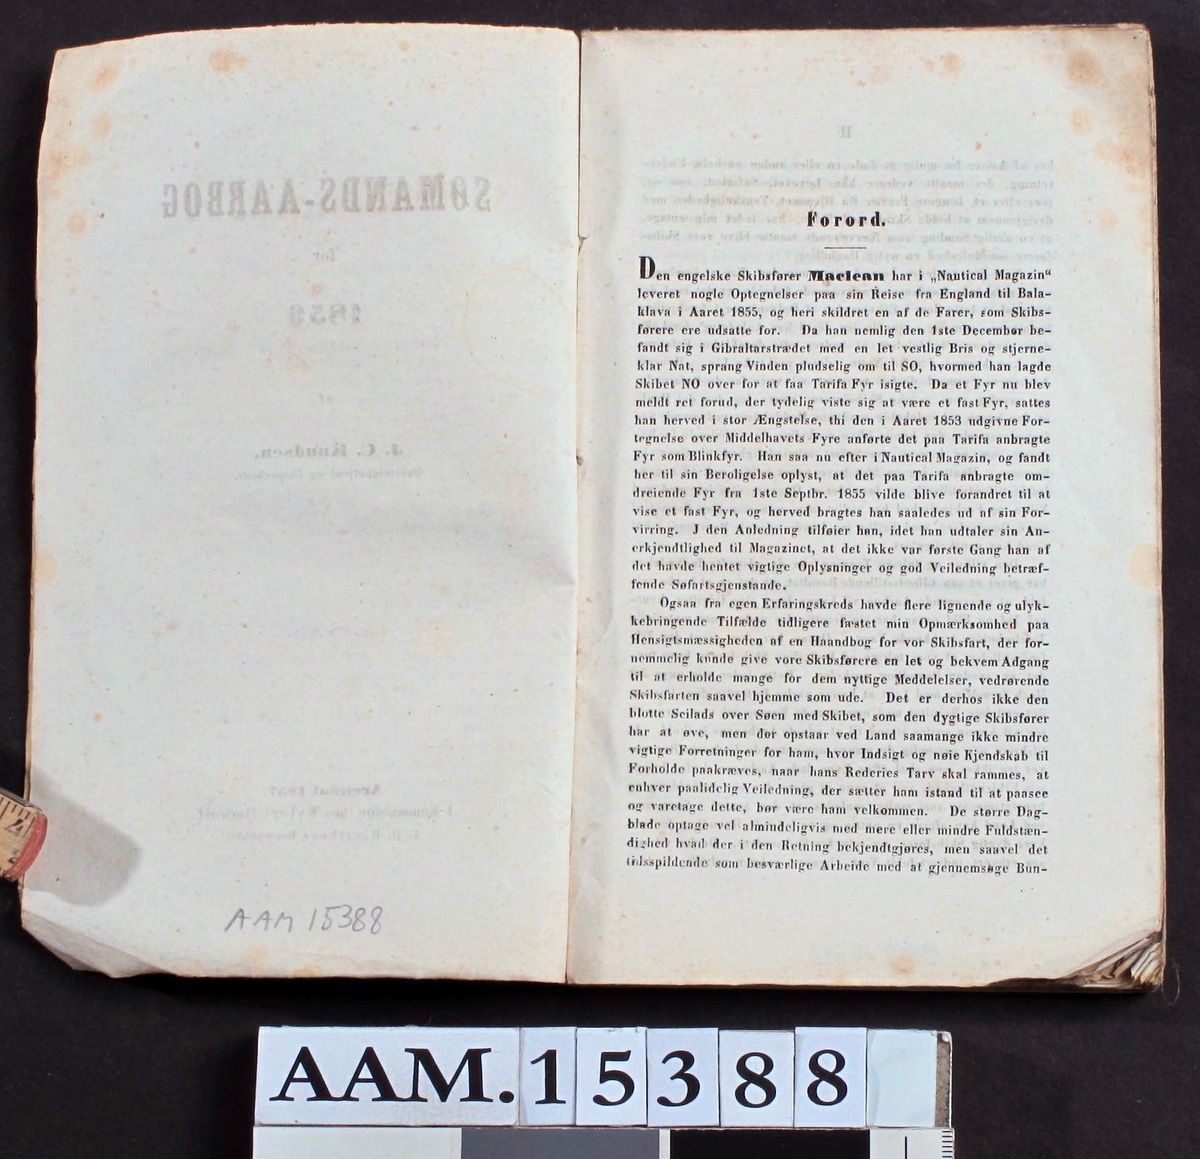 Sømands Aarbog for 1856 af J. C. Knudsen,   Øvertoldbetjent og Dispacheur.arendal 1857.   I Komission hos Eilert Omholt.   T. D. Hjorthøys Bogtrykkeri.  Gult (skittent) papiromslag, 116s.  